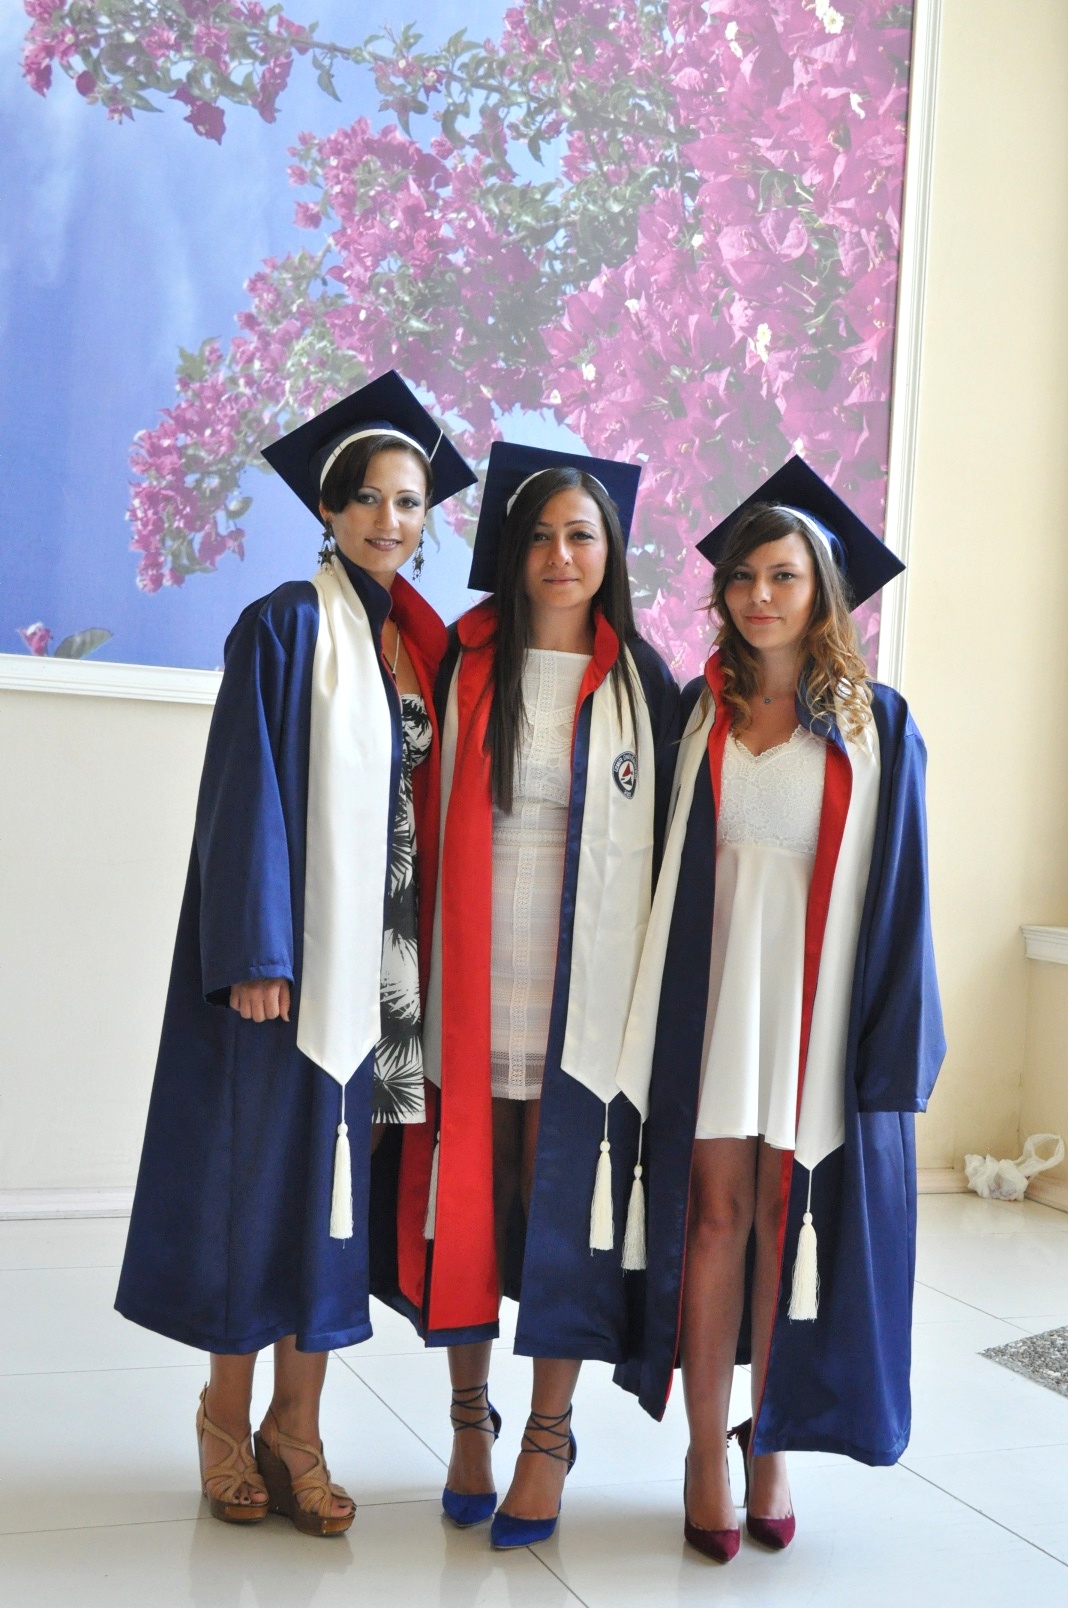 İzmir Üniversitesinde mezuniyet gururu